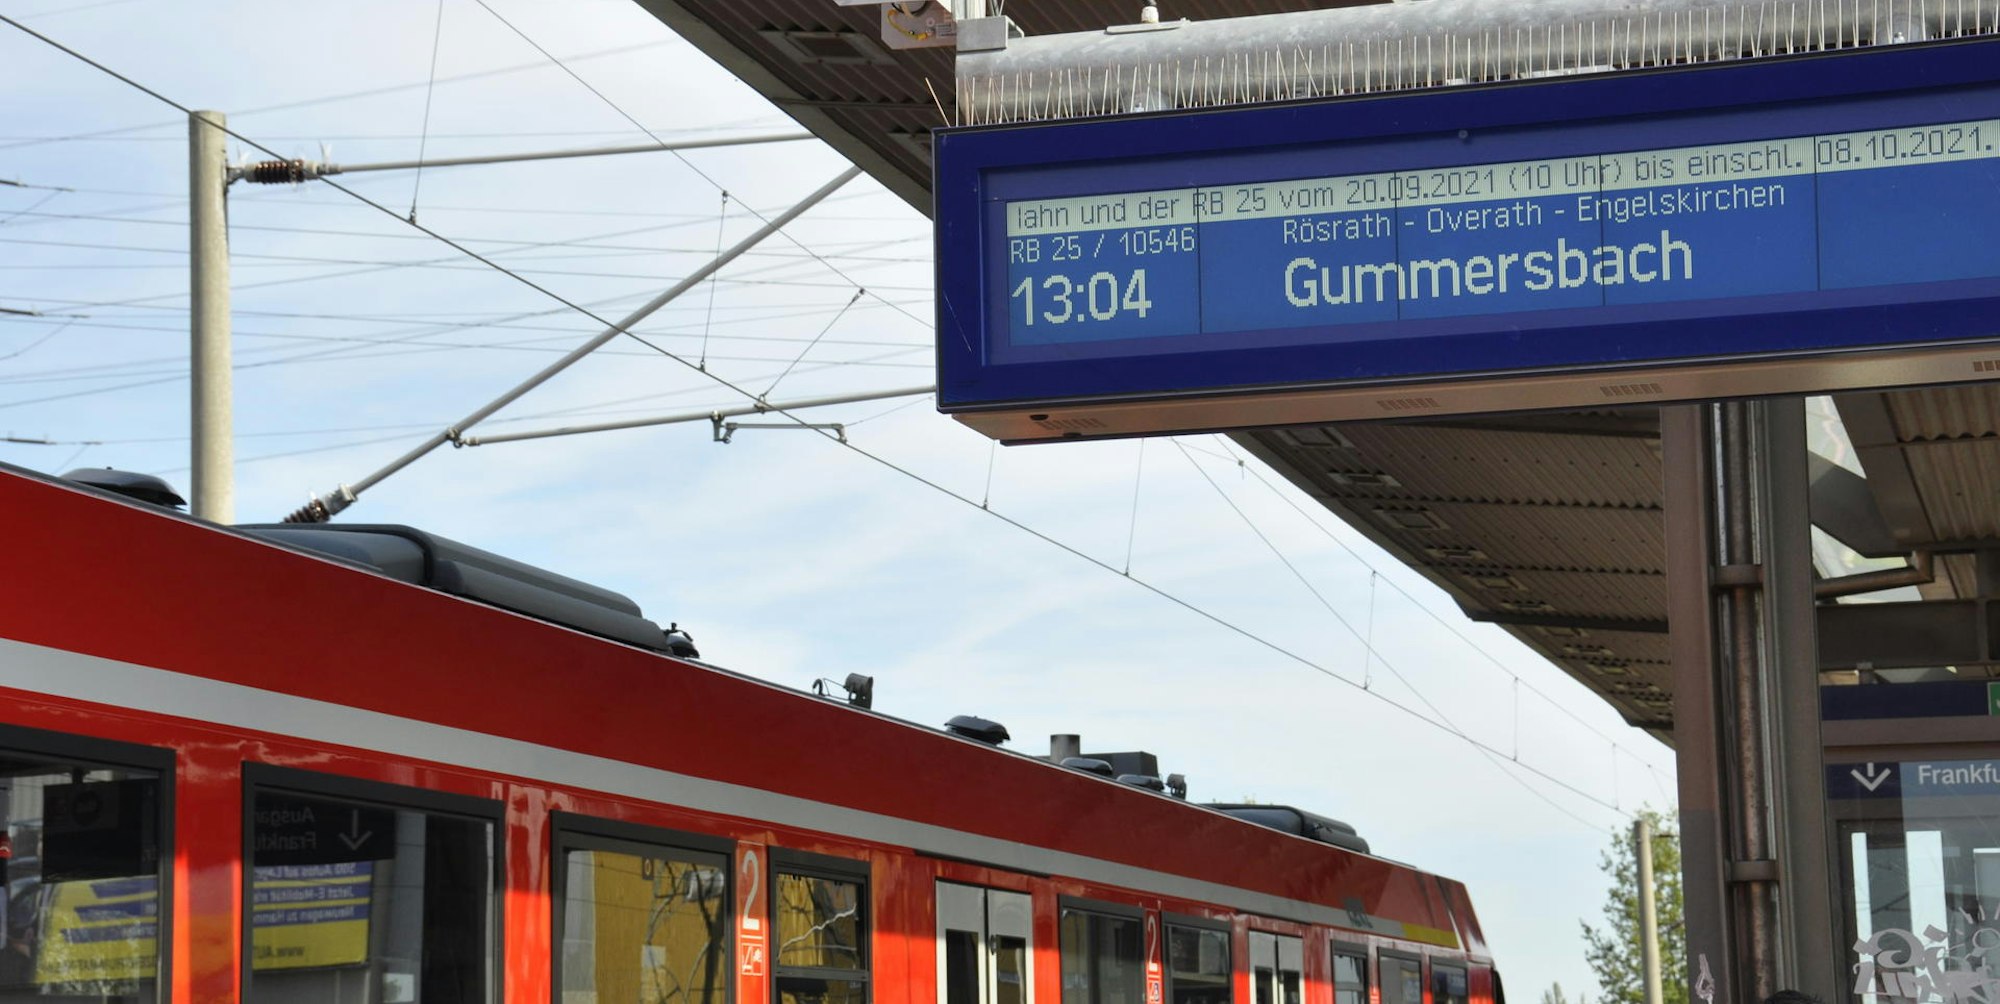 Endstation Köln-Frankfurter Straße: Die Fahrt der RB25 nach Köln endet vorzeitig, die Züge kehren dort um zur Rückfahrt nach Gummersbach.